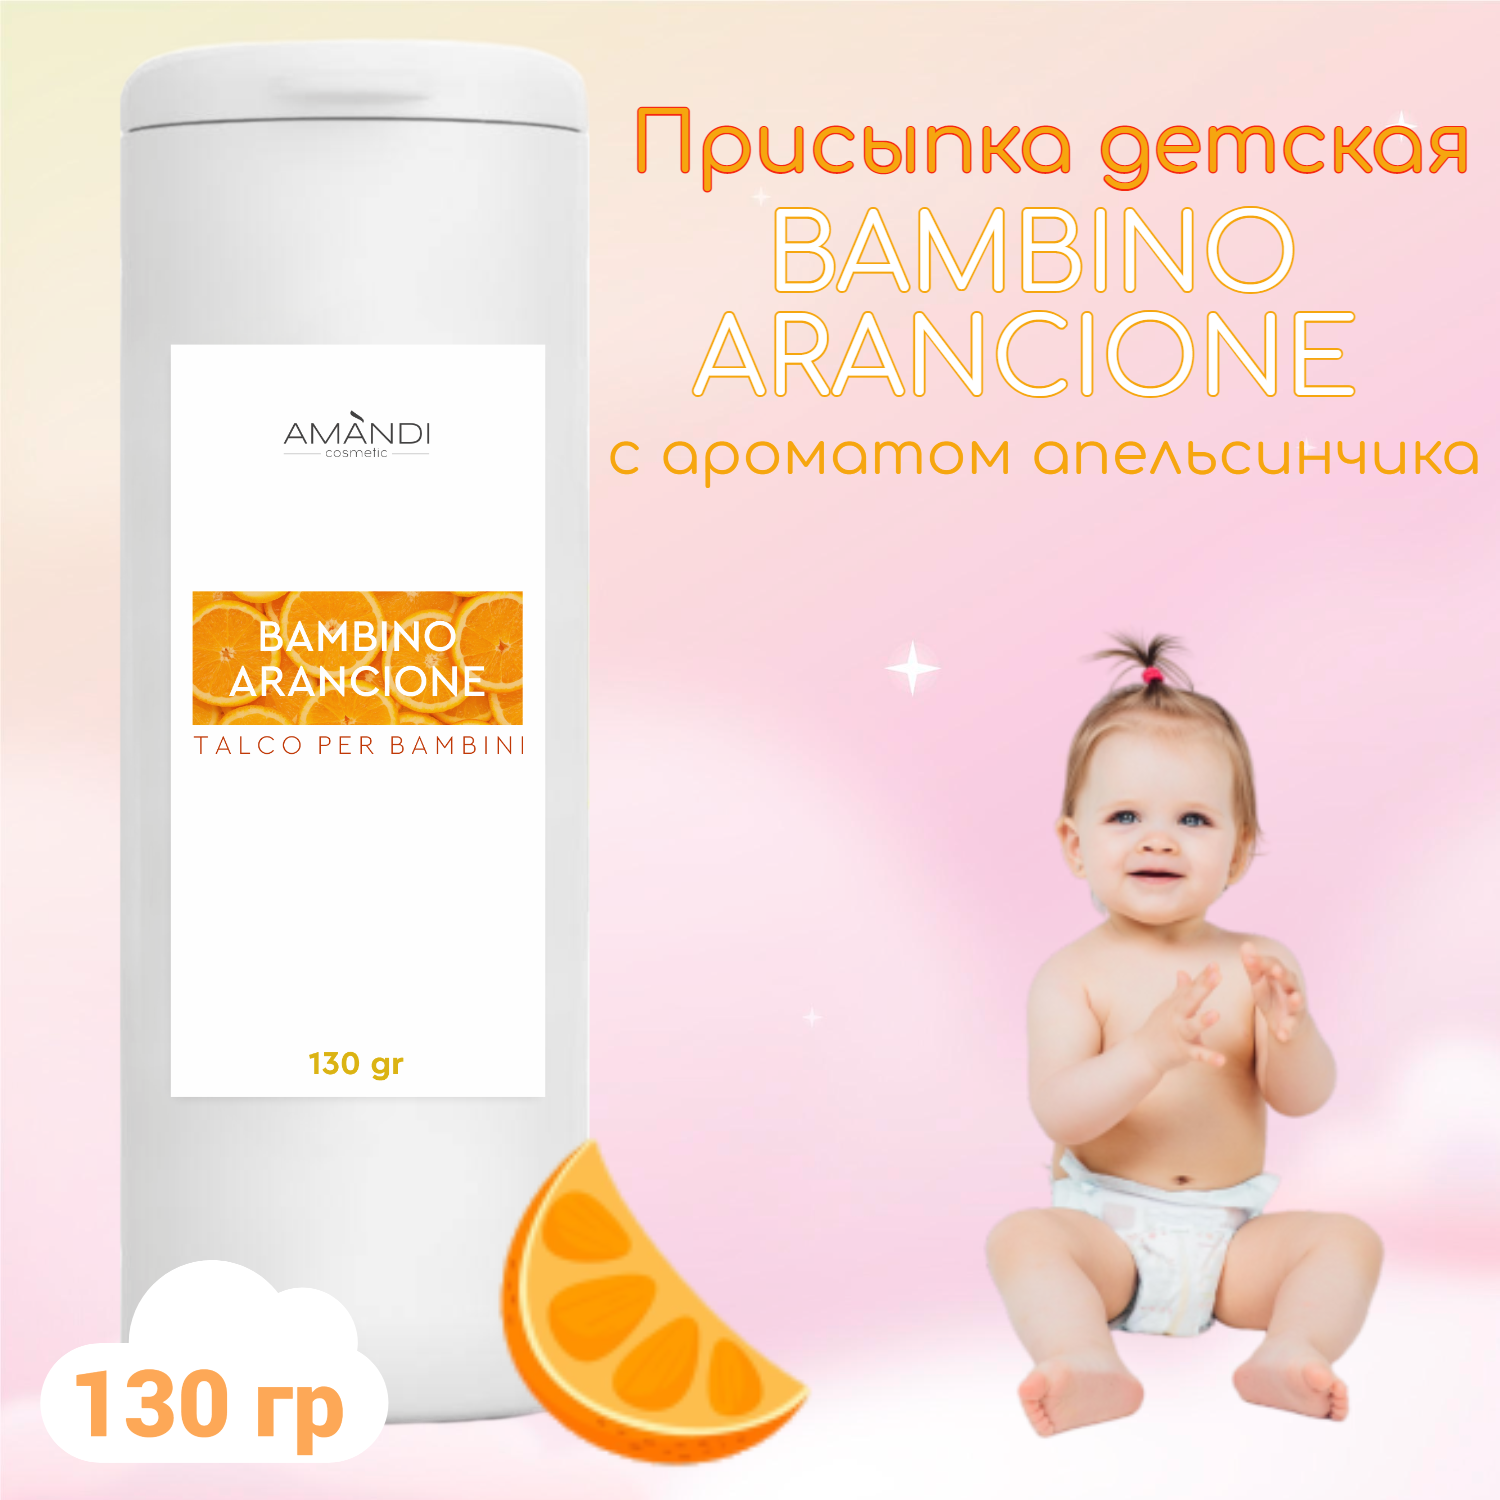 Присыпка детская AMANDI BAMBINO ARANCIONE с ароматом апельсина 130 грамм - фото 2